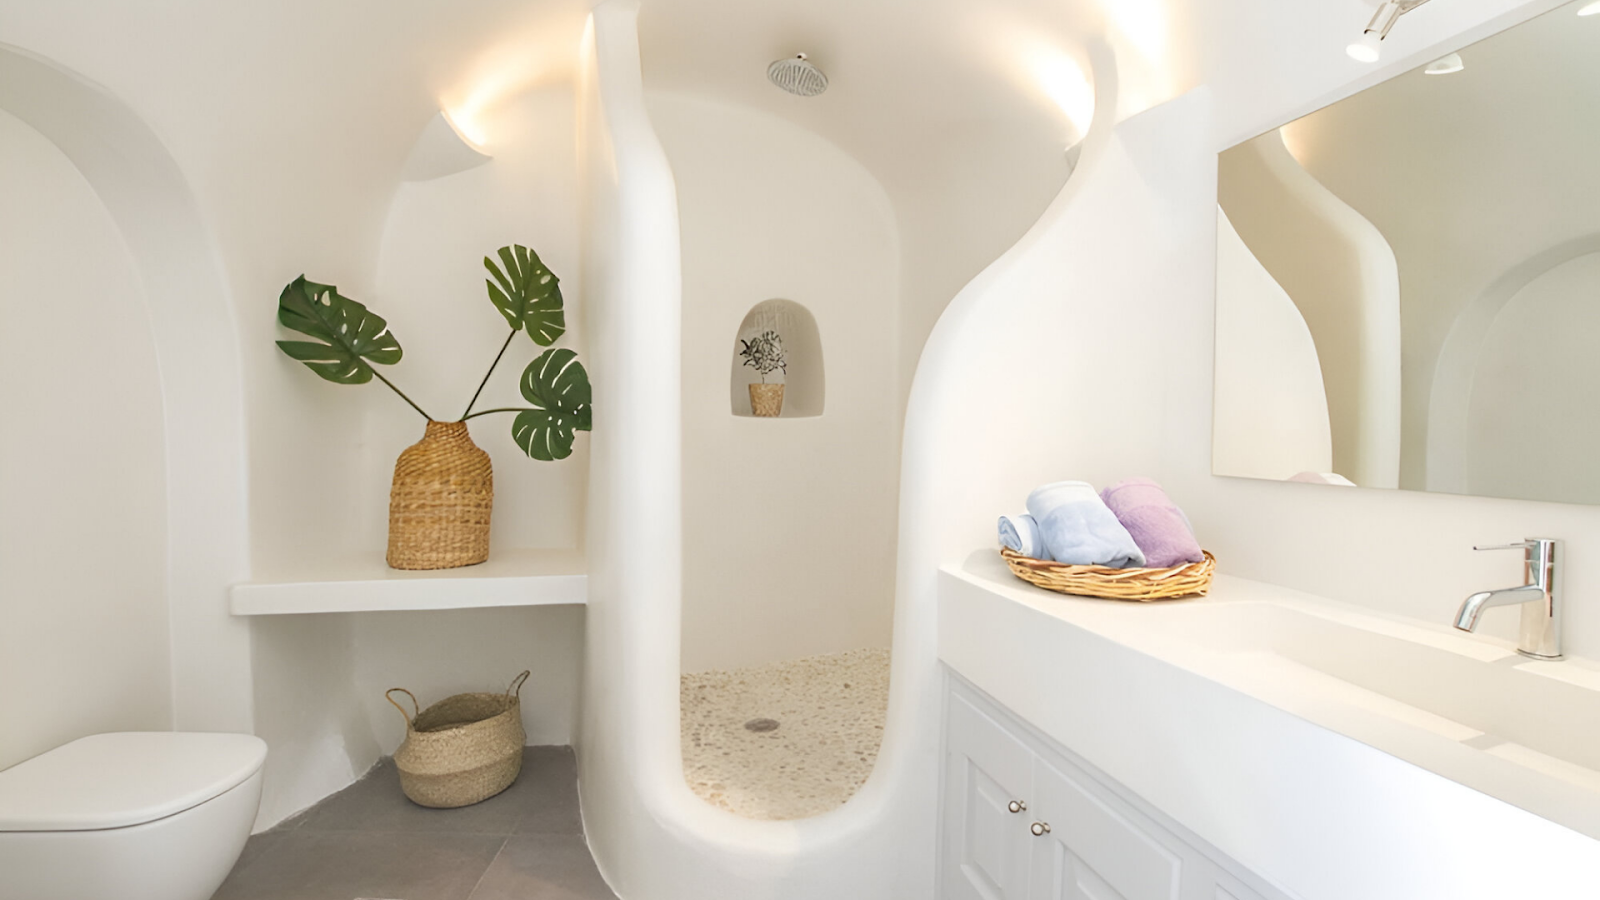 The bathroom of a unique vacation rental in Santorini